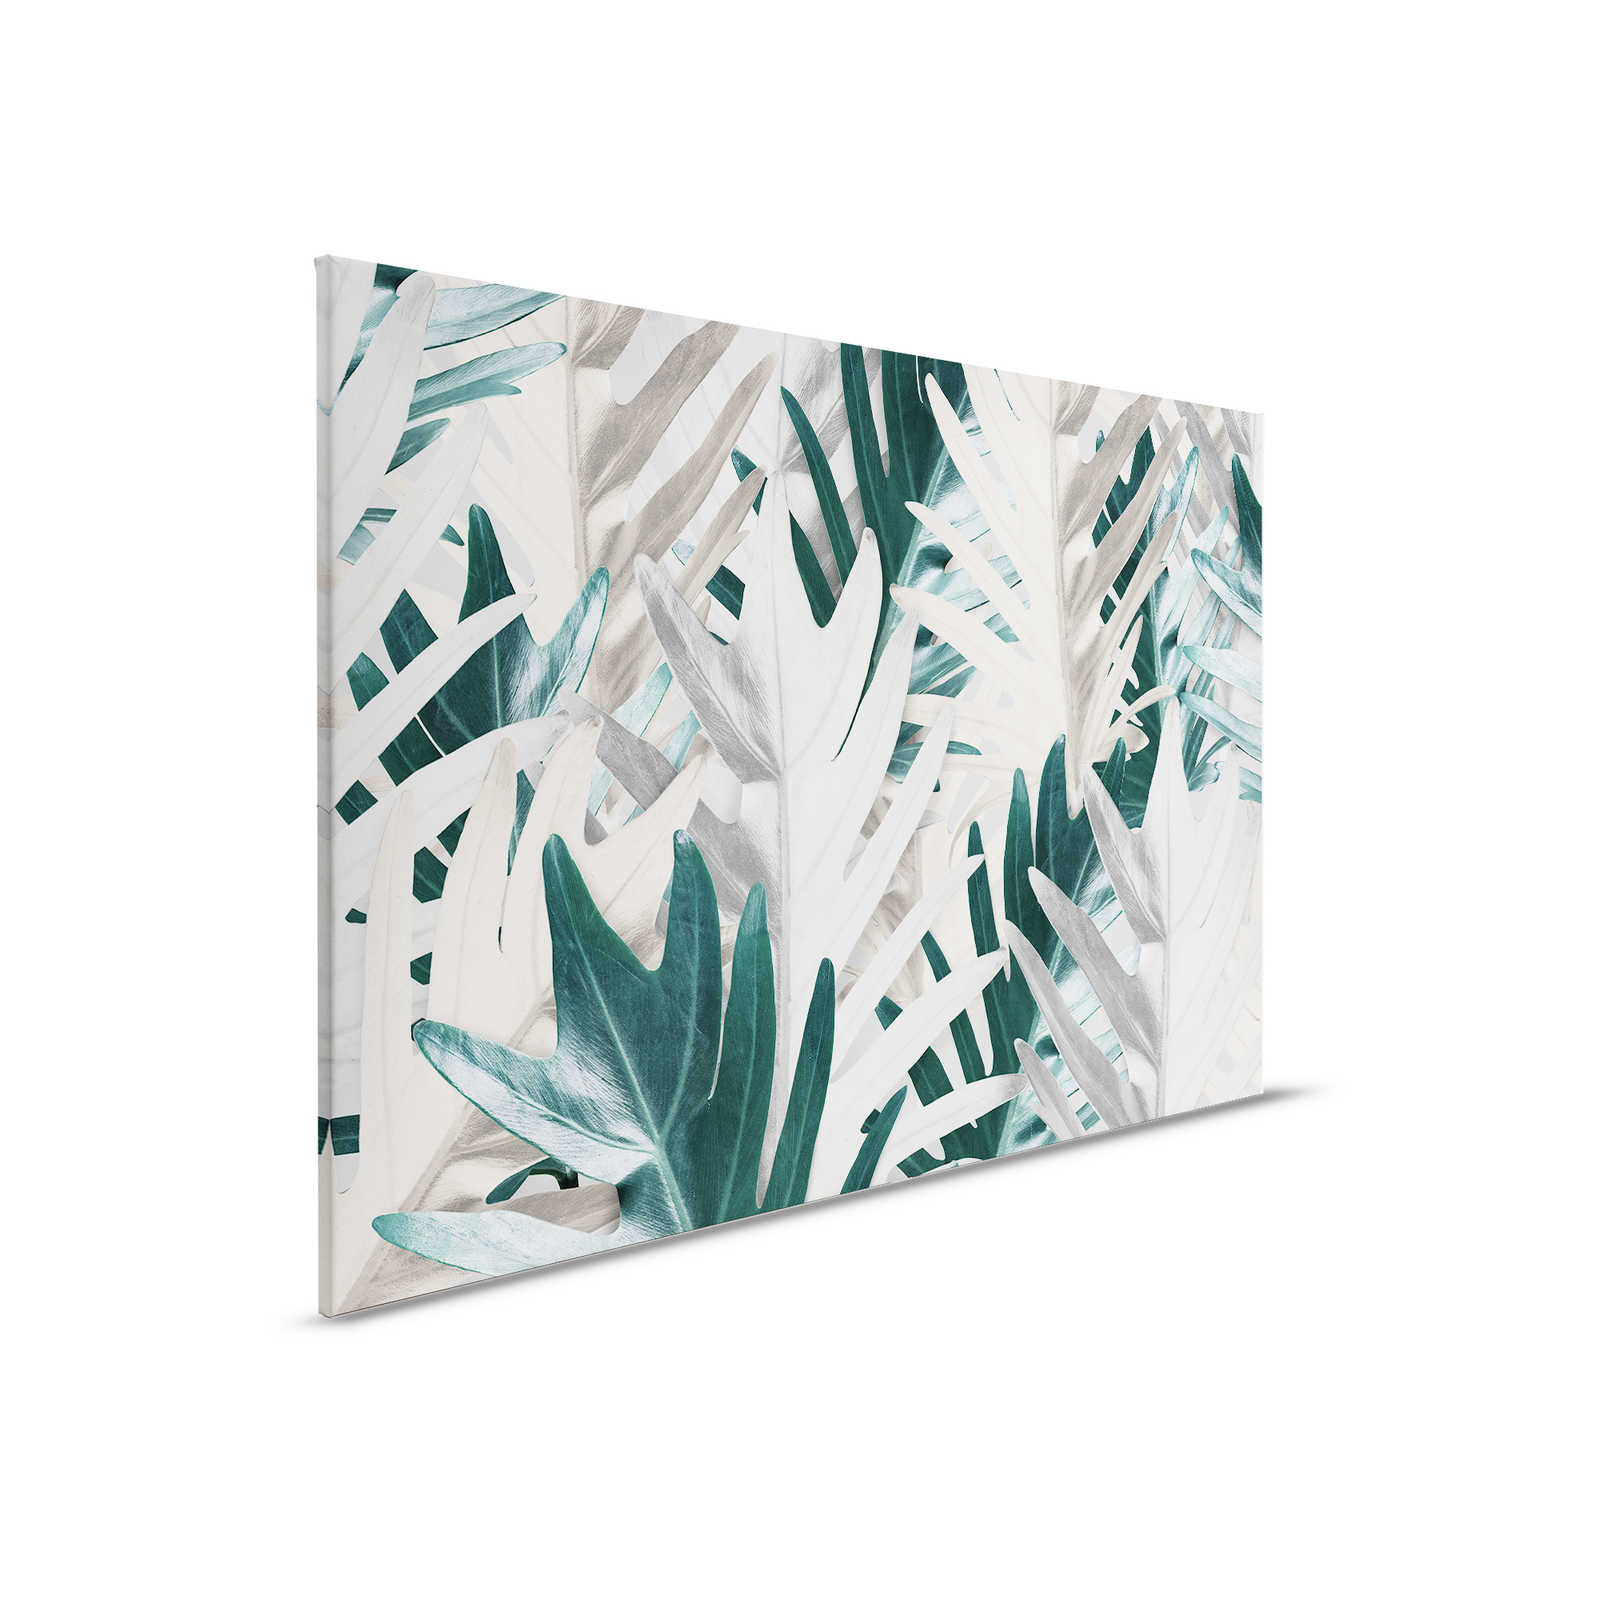             Leinwandbild mit tropischen Palmblättern – 0,90 m x 0,60 m
        